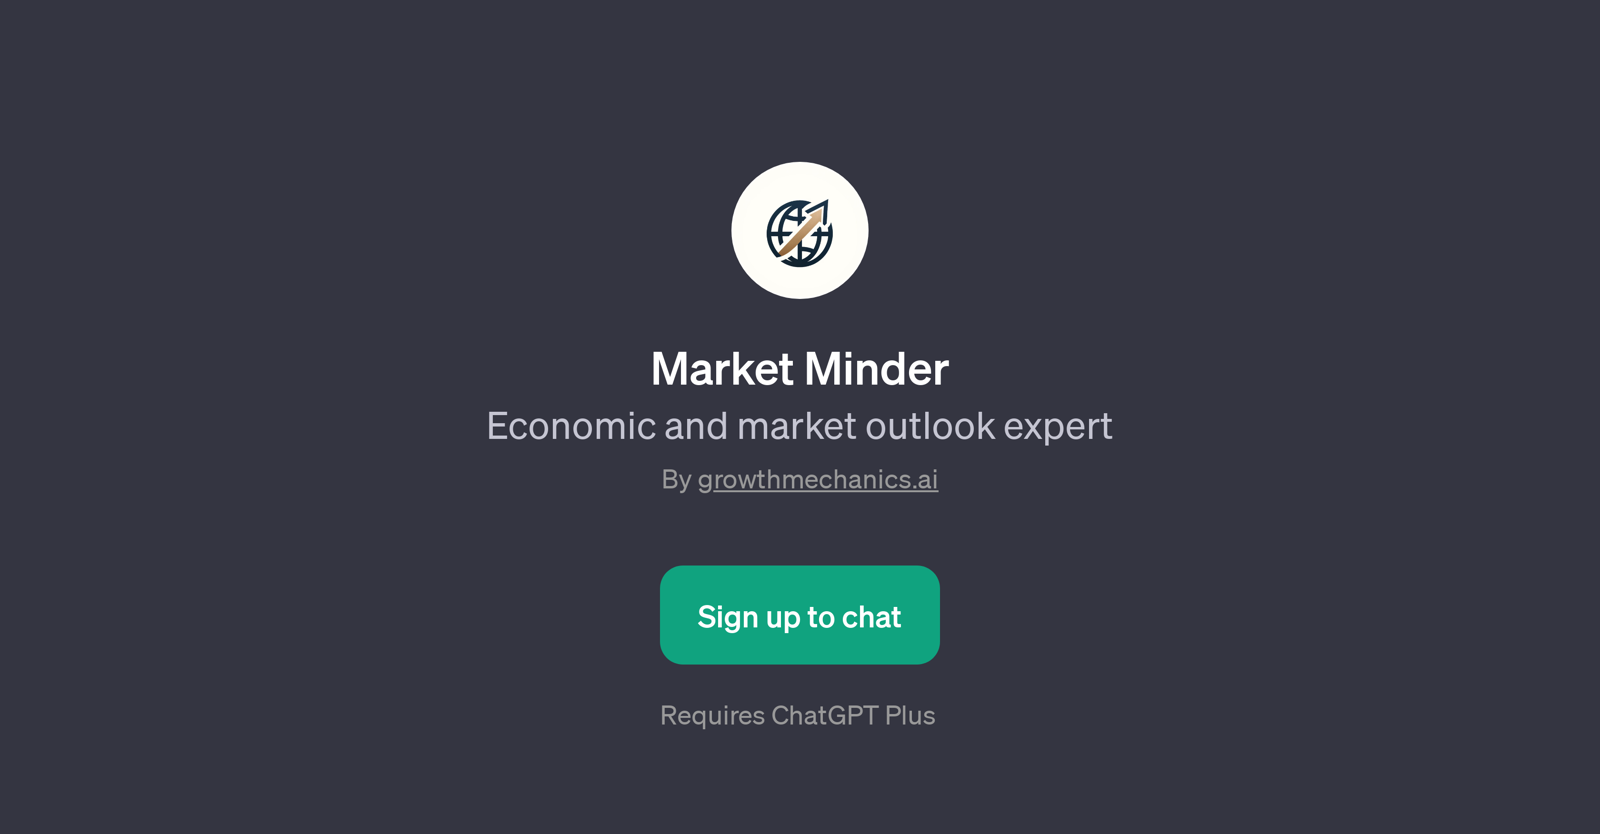 Market Minder website